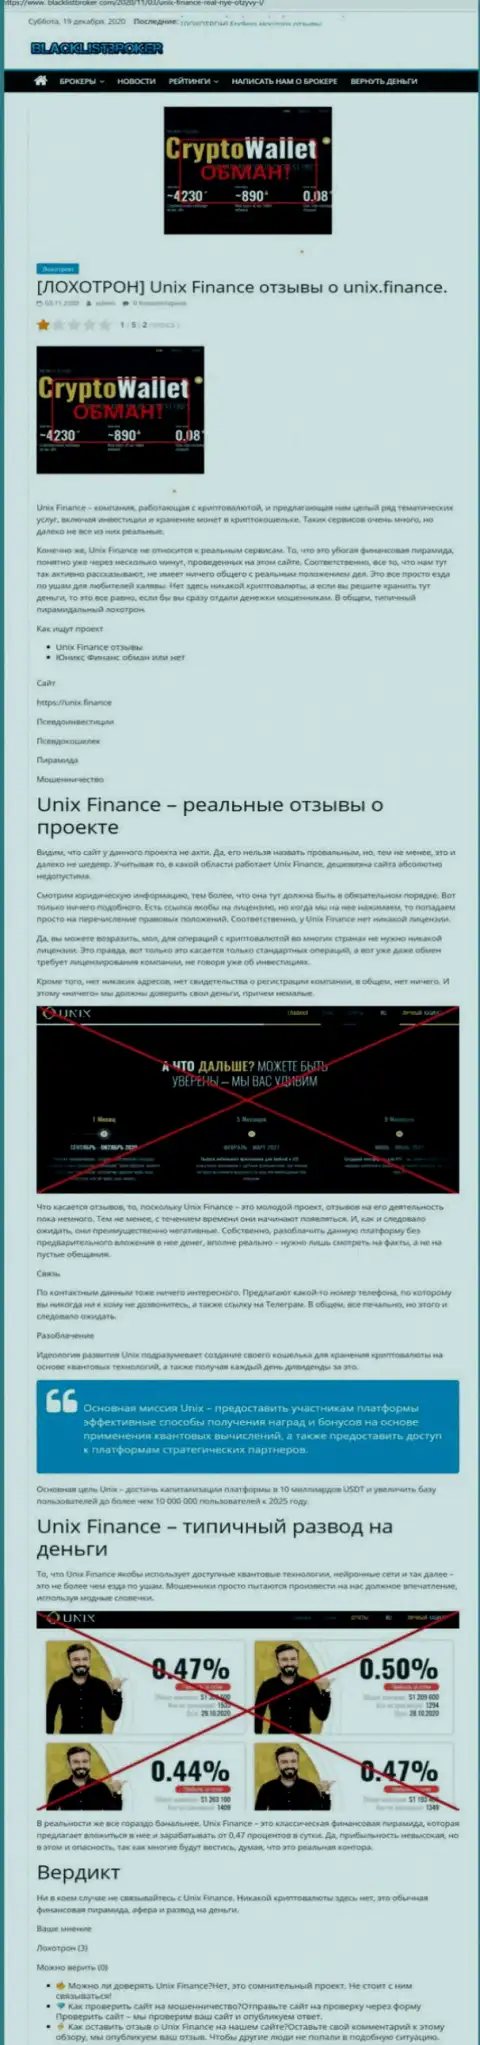 Unix Finance ГРАБЯТ !!! Факты незаконных манипуляций